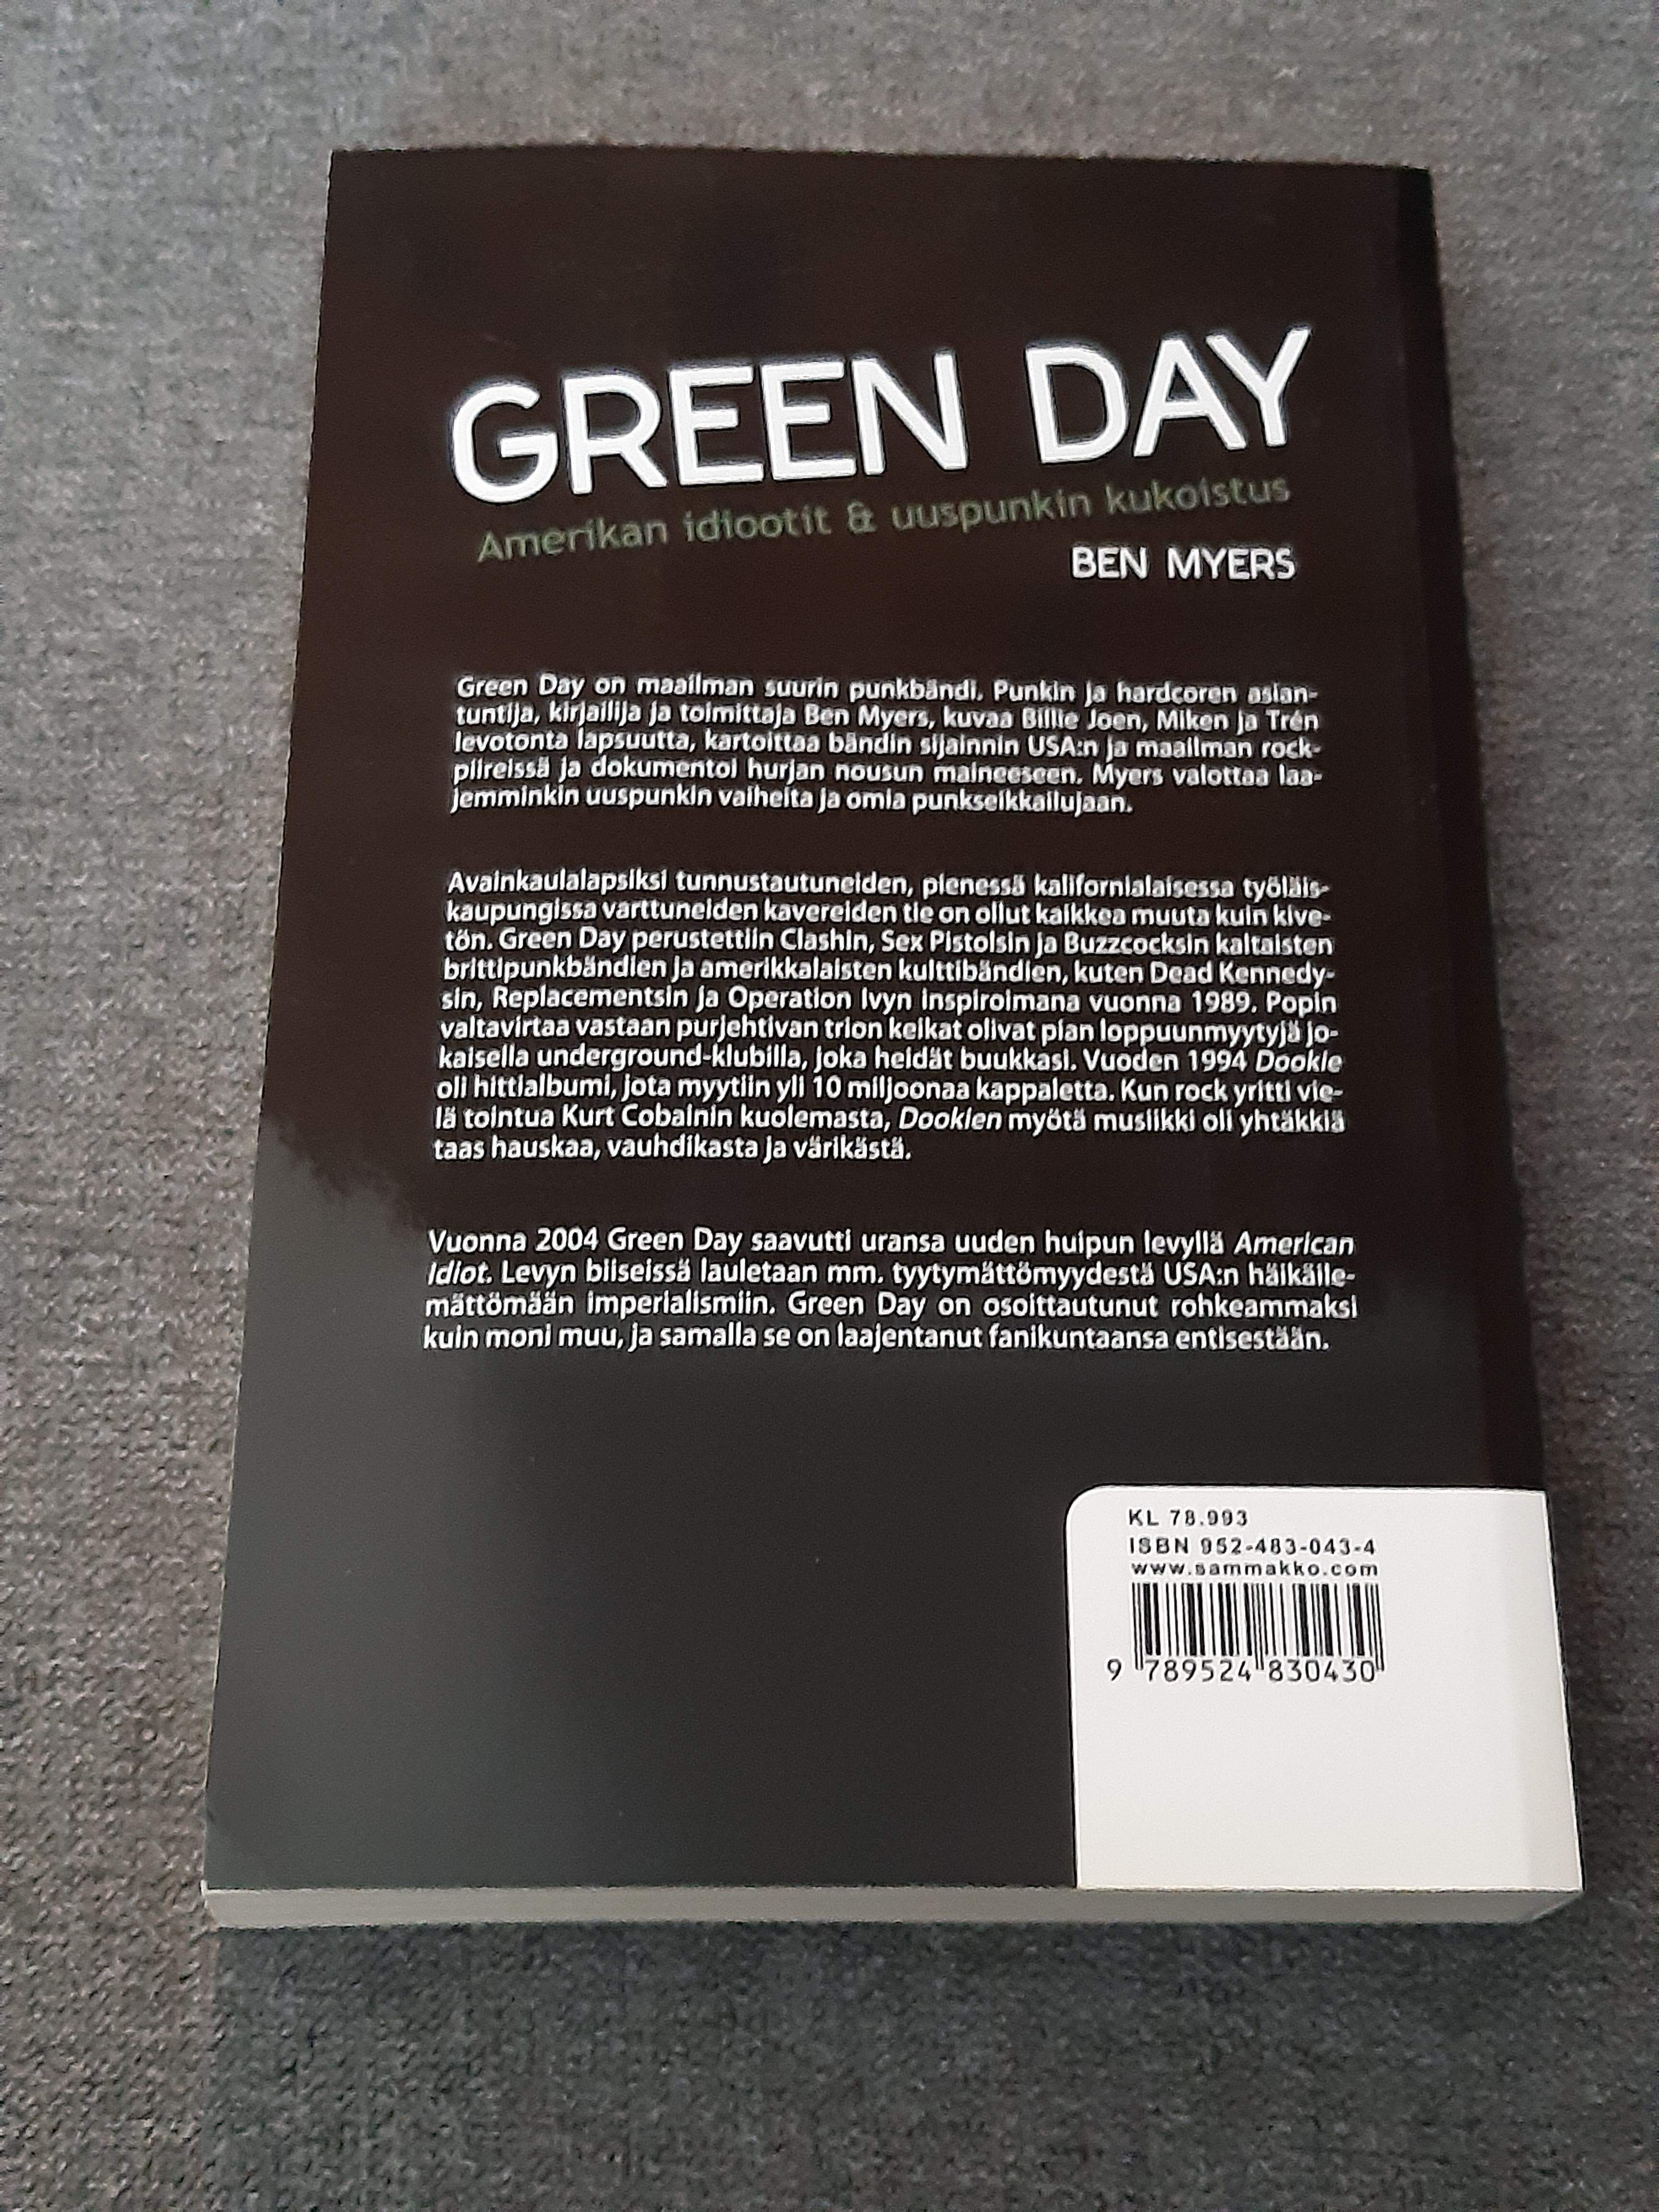 Green Day, Amerikan idiootit & uuspunkin kukoistus - Ben Myers - Kirja (käytetty)